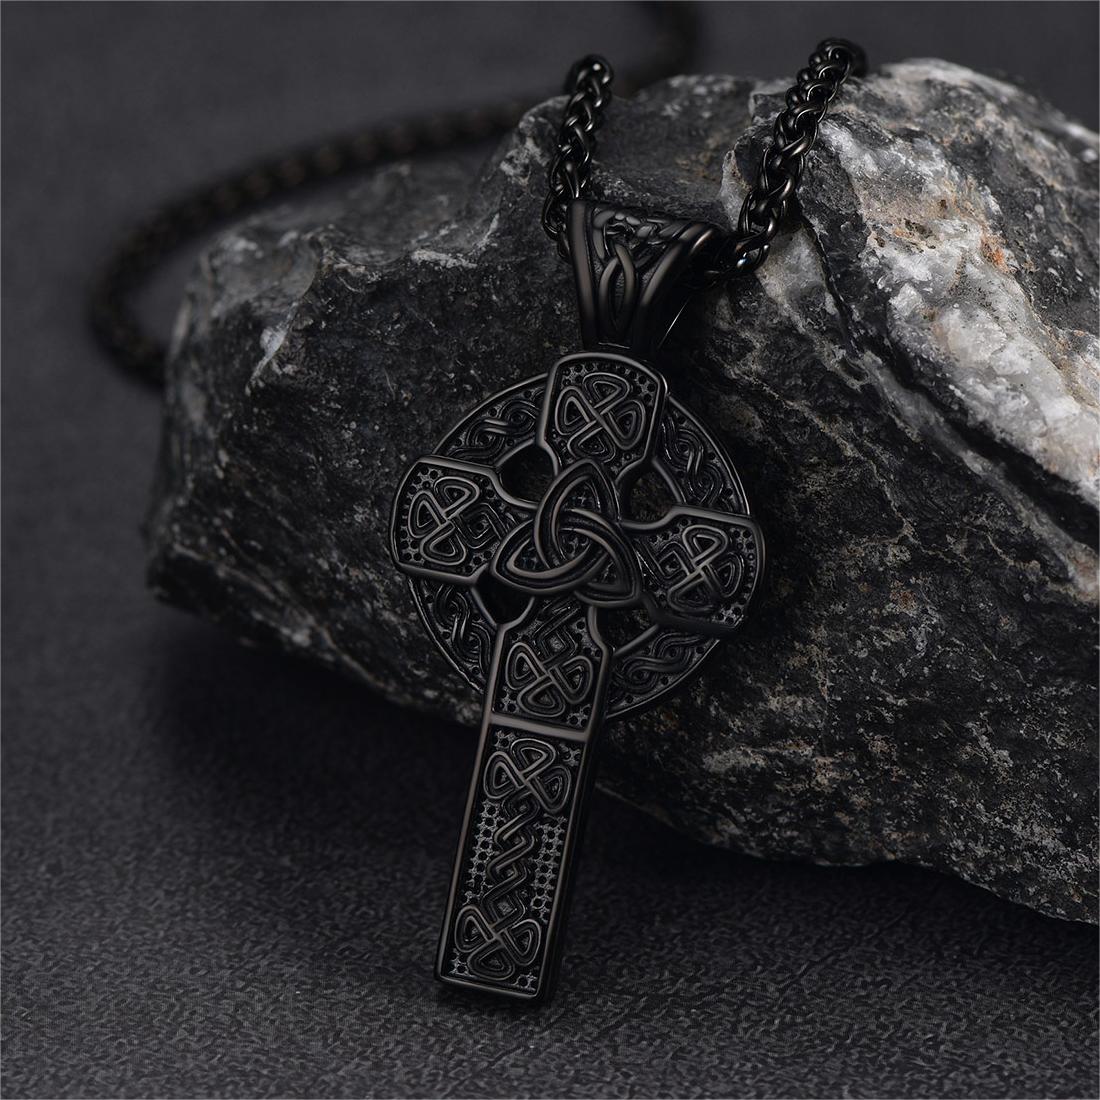 FaithHeart Irish Celtic Knot Cross Necklace For Men FaithHeart